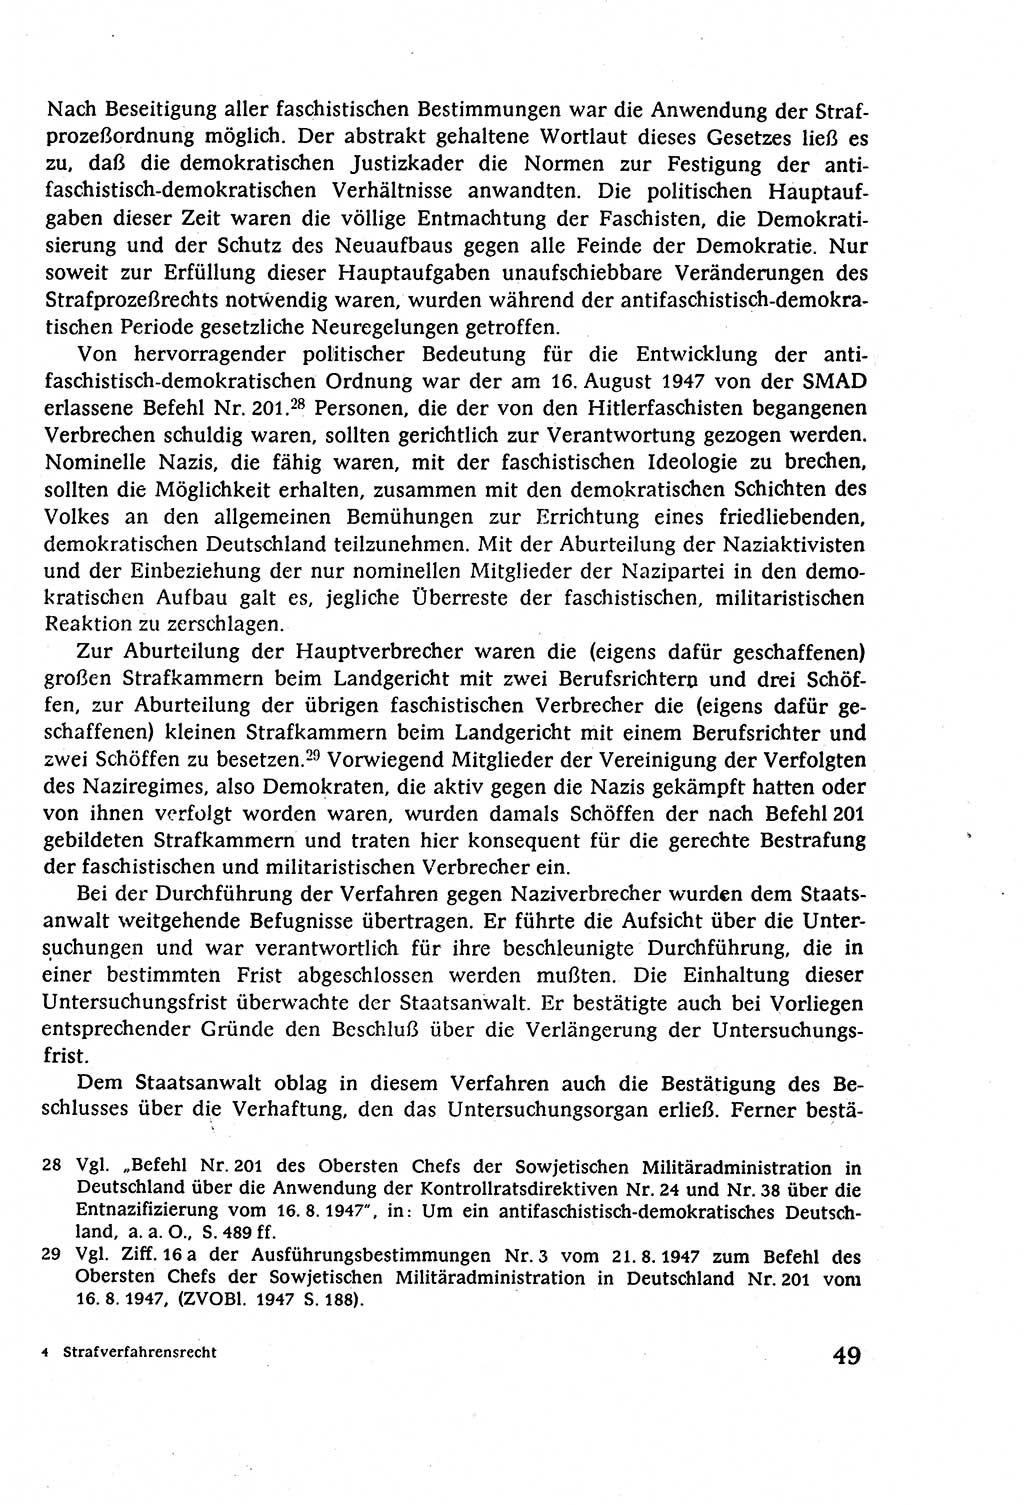 Strafverfahrensrecht [Deutsche Demokratische Republik (DDR)], Lehrbuch 1977, Seite 49 (Strafverf.-R. DDR Lb. 1977, S. 49)